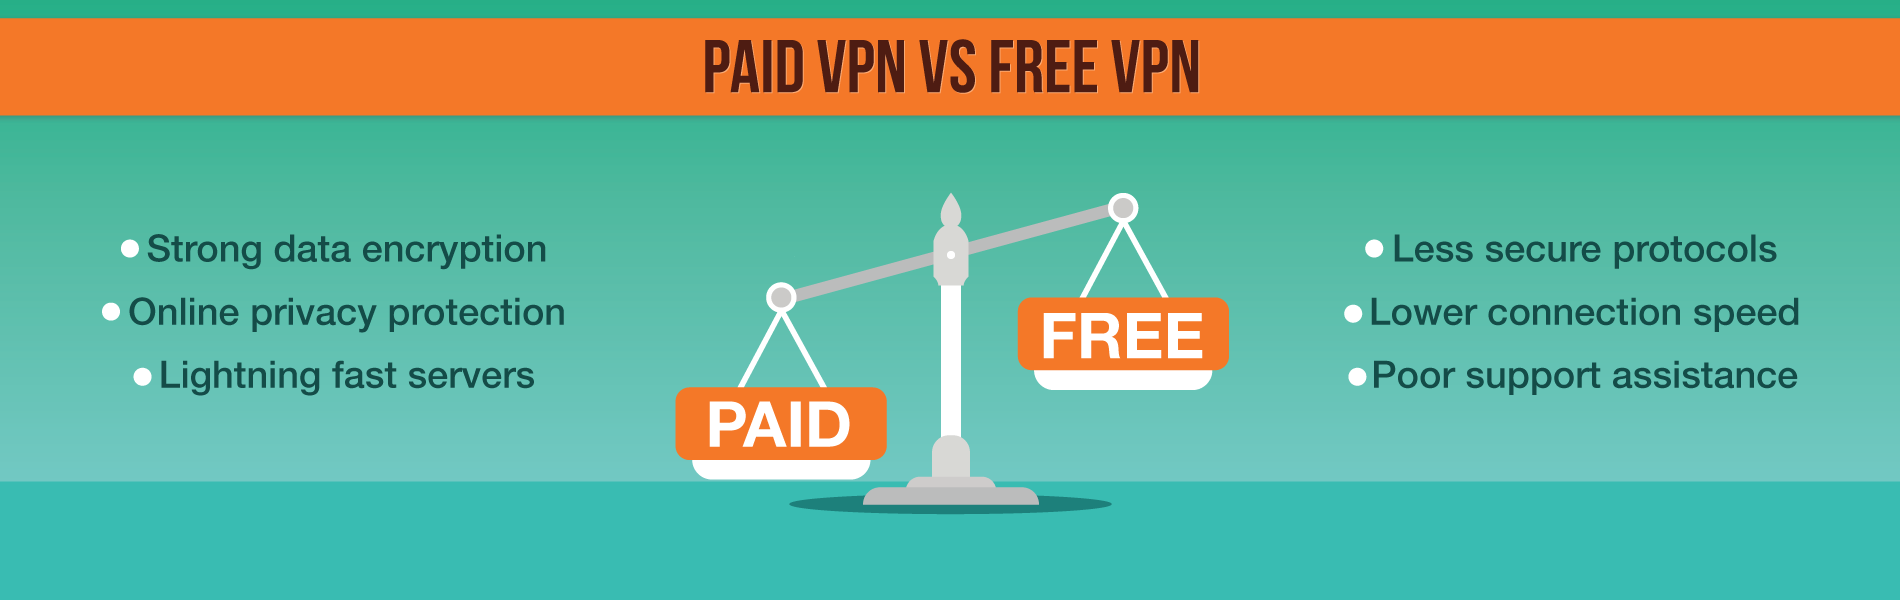 免费VPN与付费VPN对比